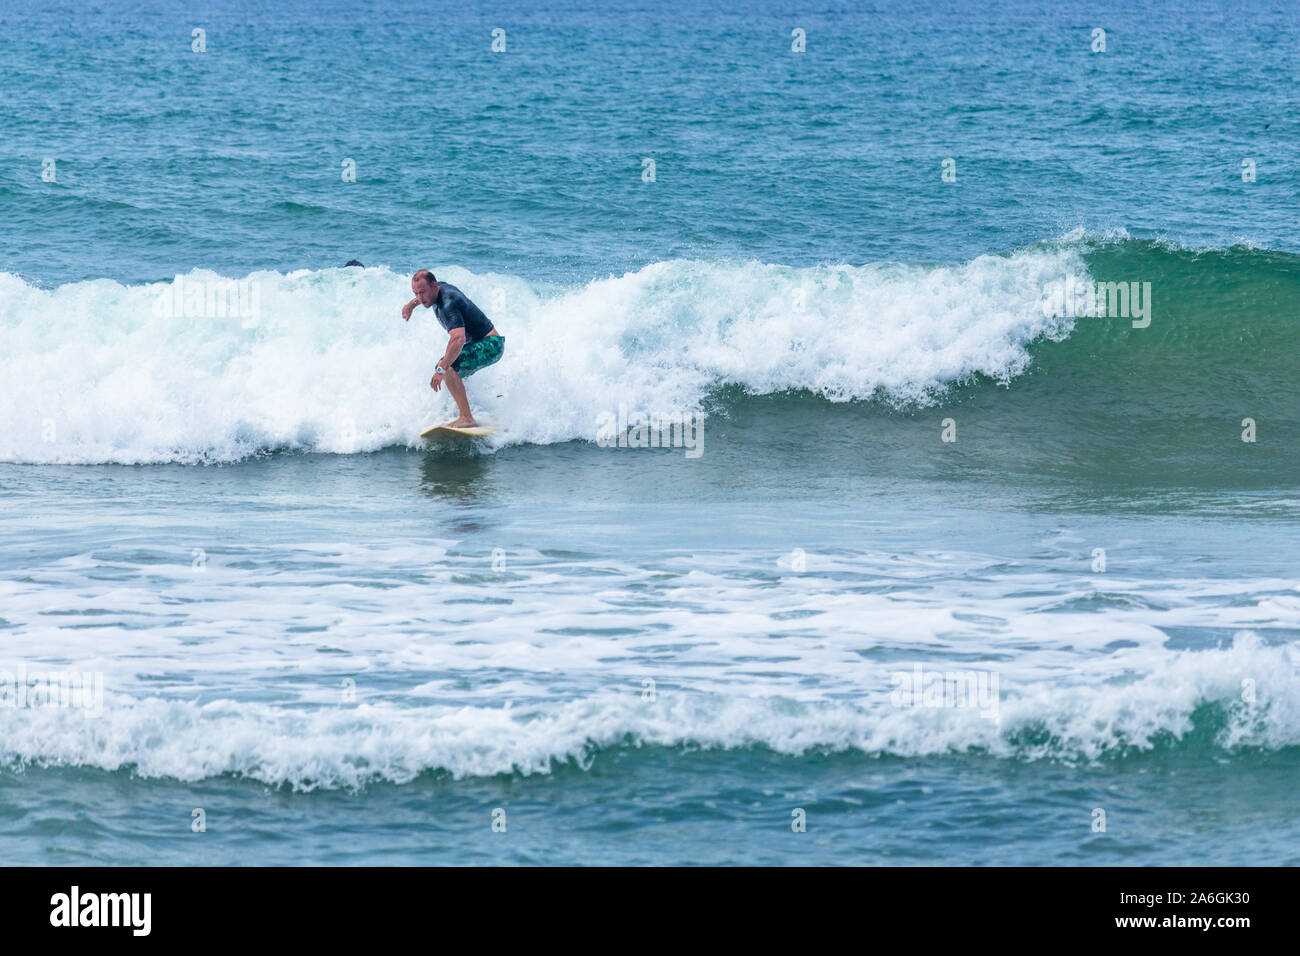 Hikkaduwa, Sri Lanka - 10/18/2019 - Pro surfer surfing at the Sri Lanka beach Stock Photo